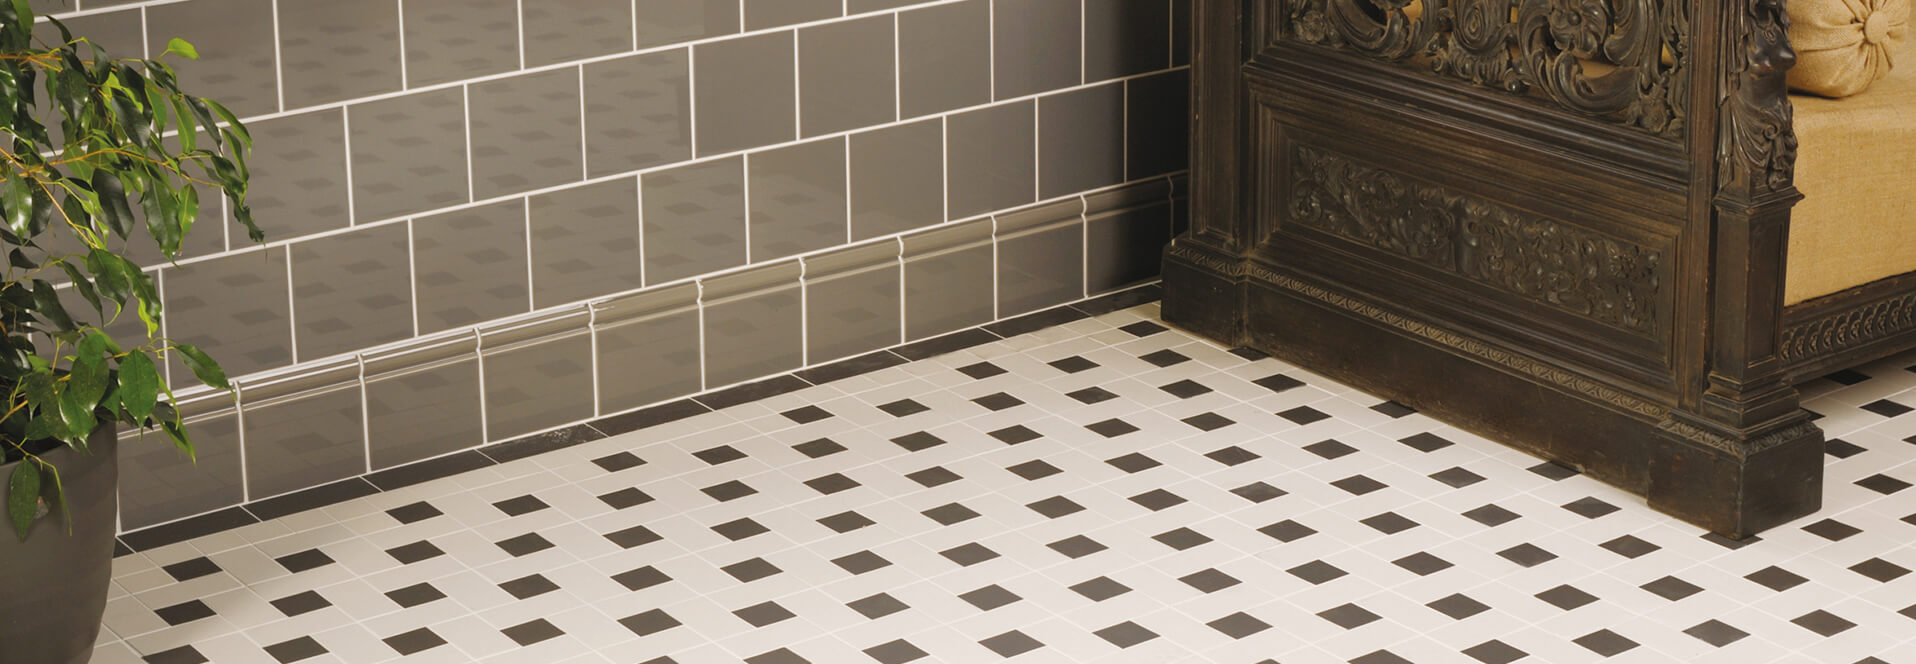 Victorian Floor tile